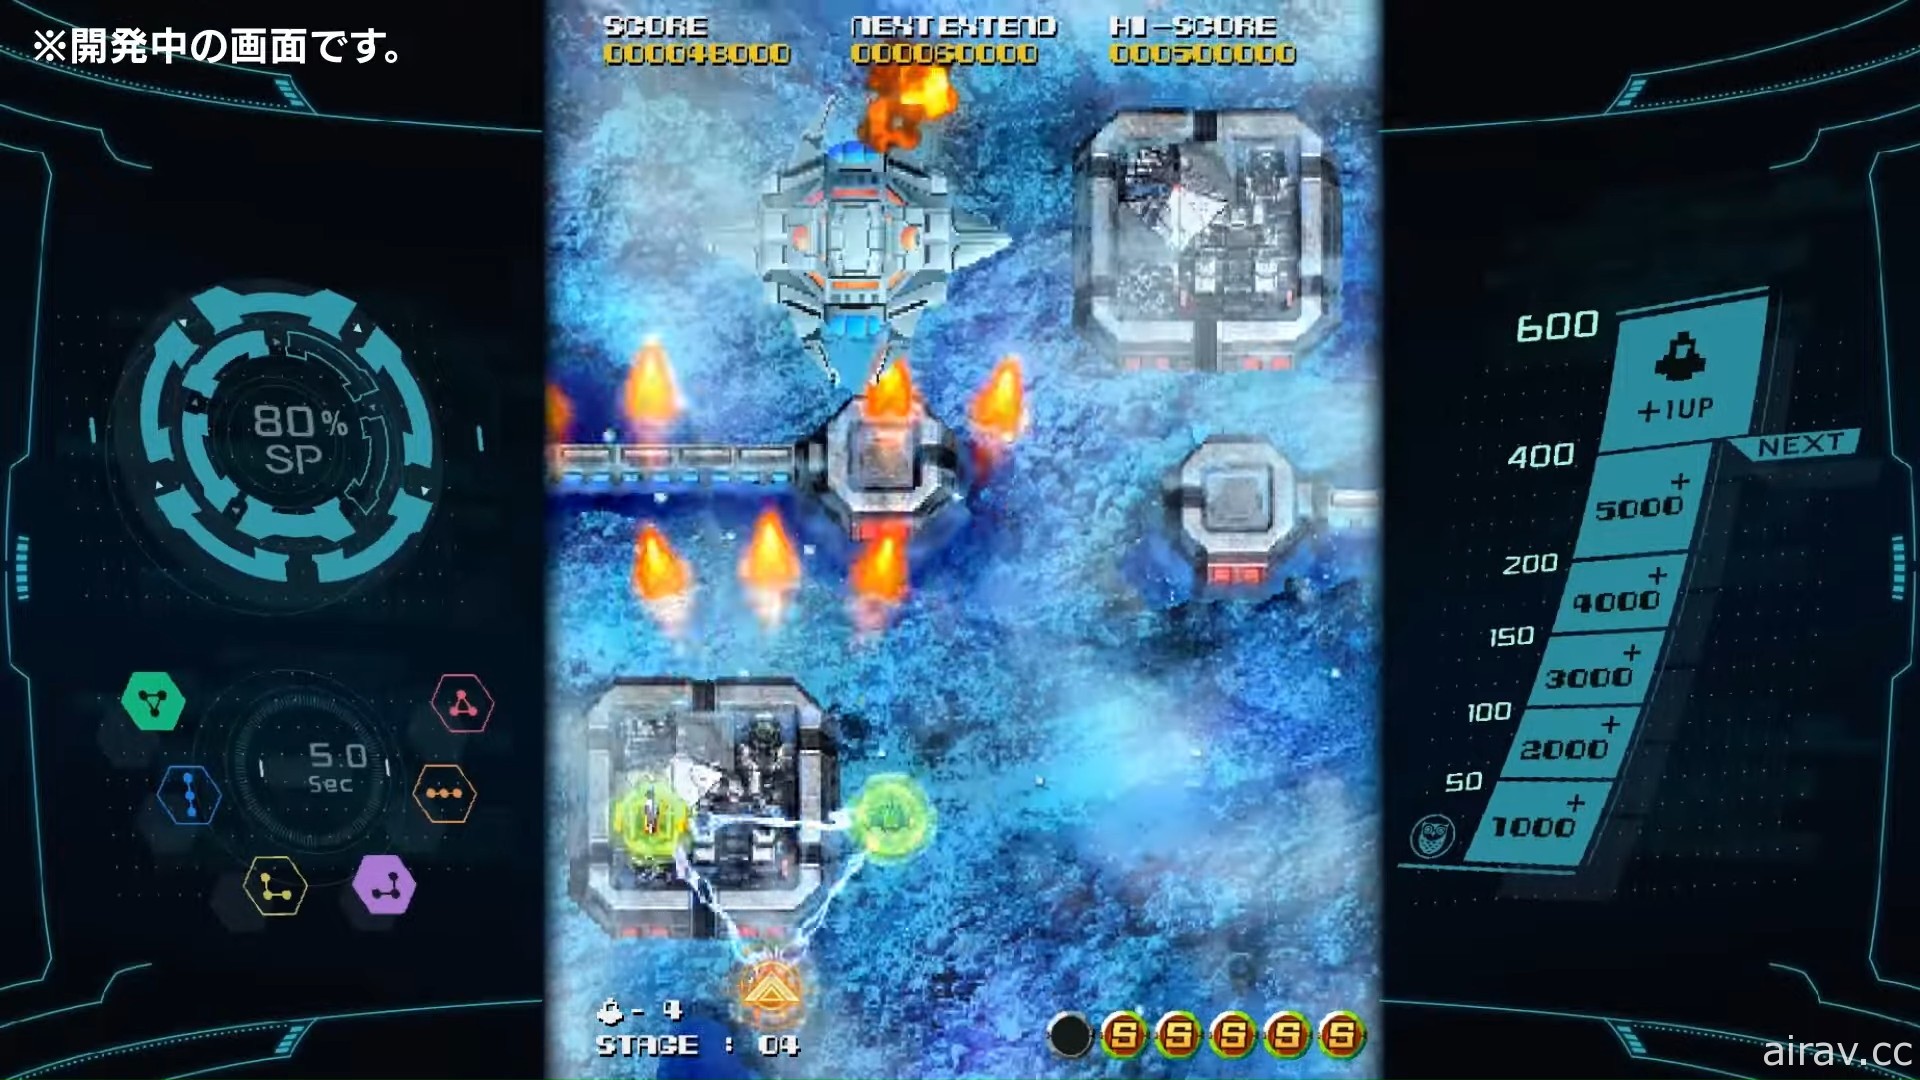 PlatinumGames 宣布推出經典射擊遊戲《巔峰戰機》系列最新作《太陽巔峰戰機》